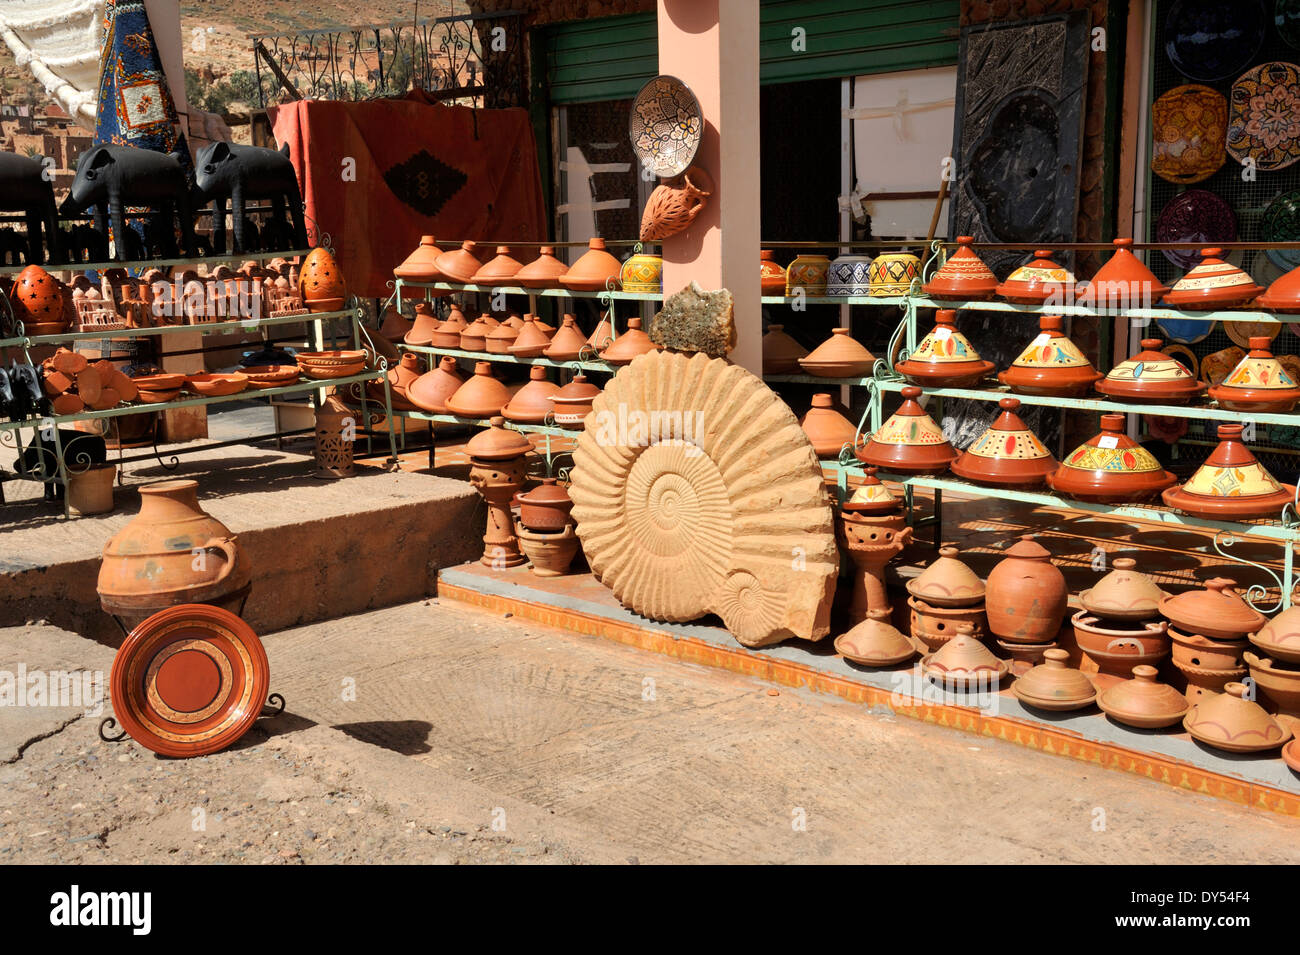 Atelier de poterie - Marrakech Best Of